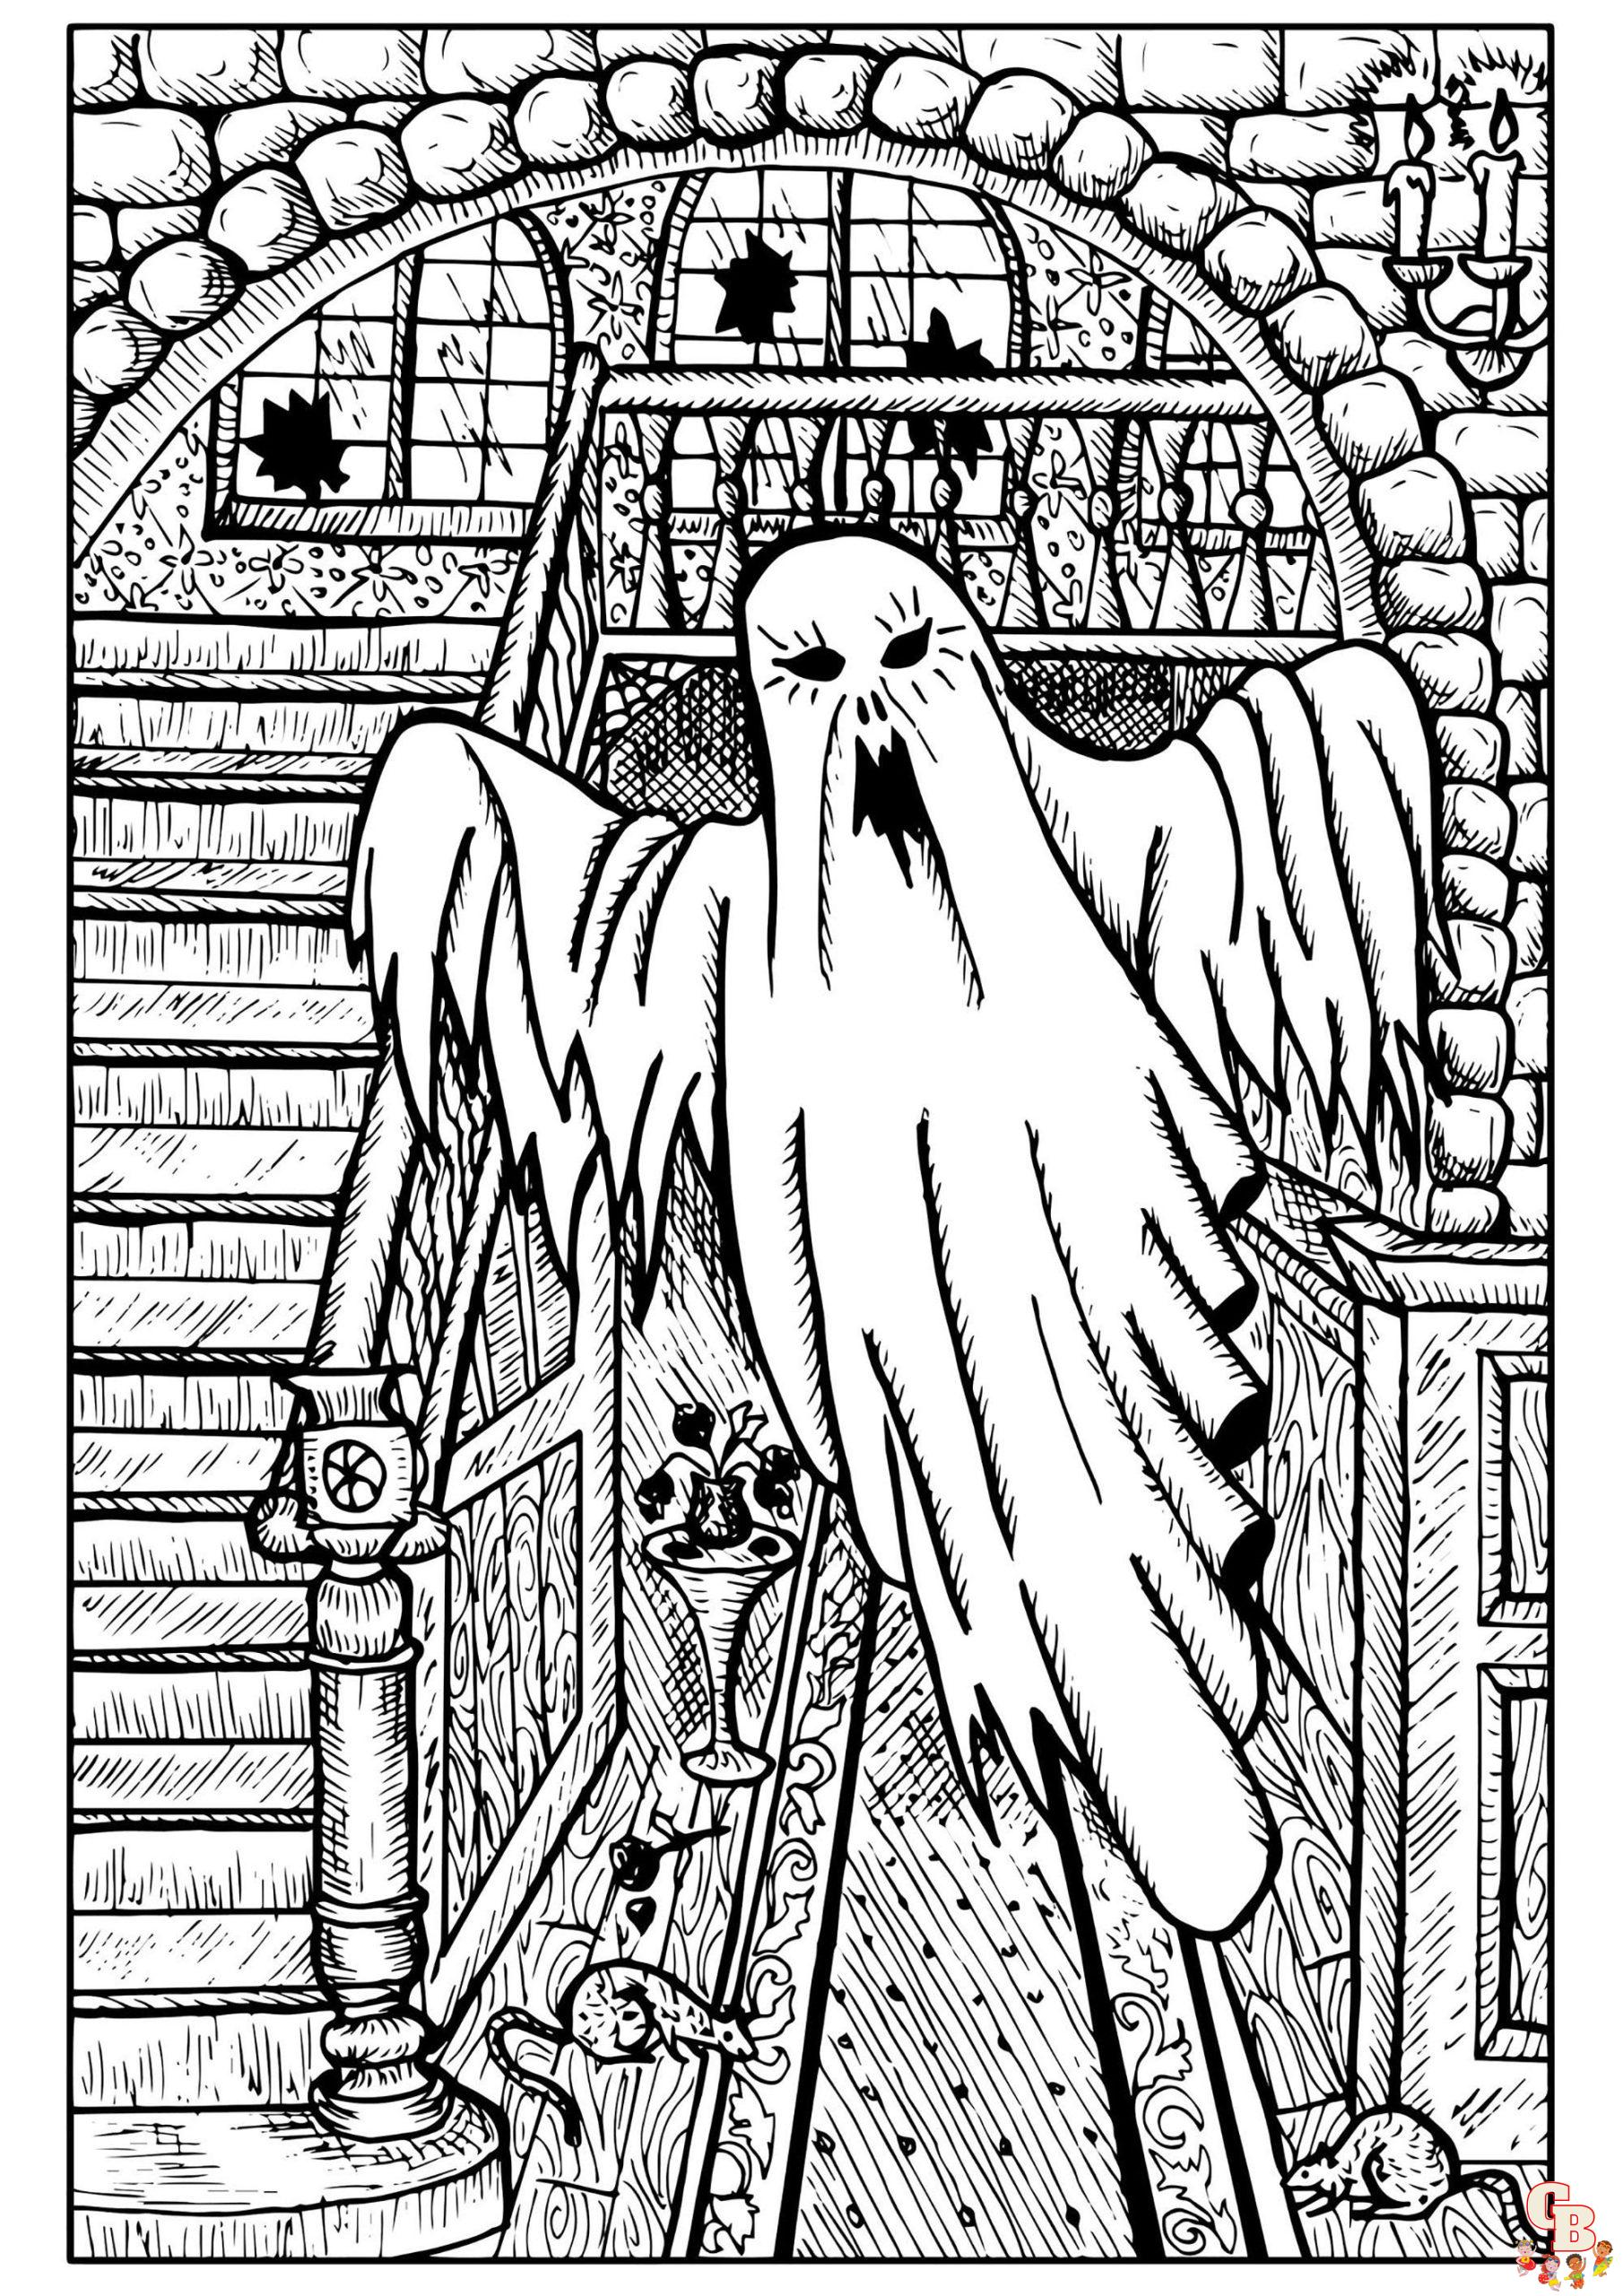 Página para colorear de fantasmas de Halloween